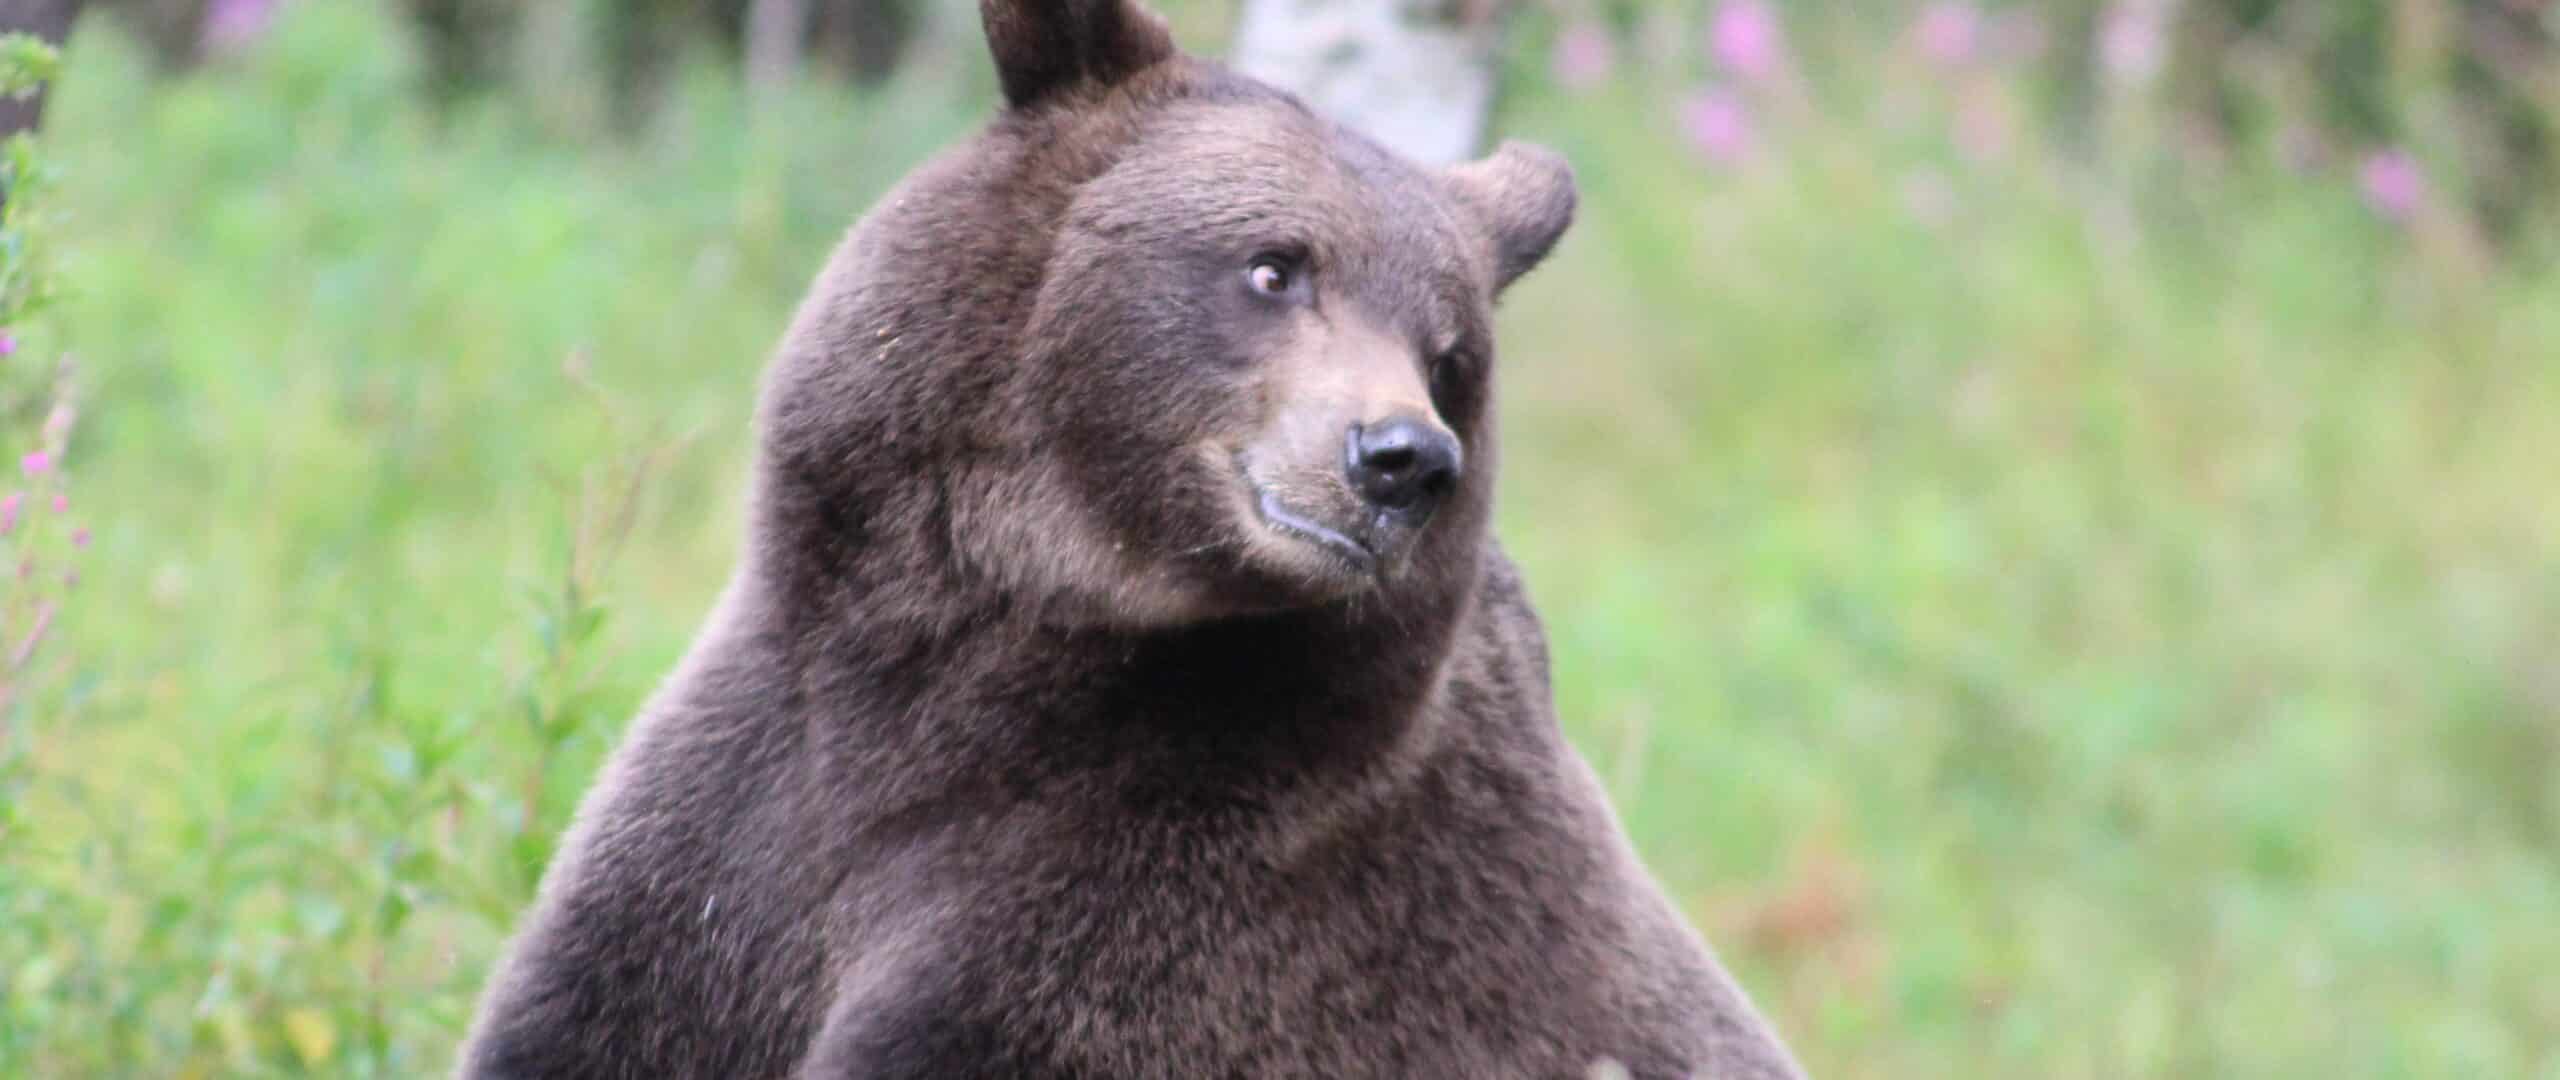 Istuva karhu kääntää katsettaan sivulle metsässä